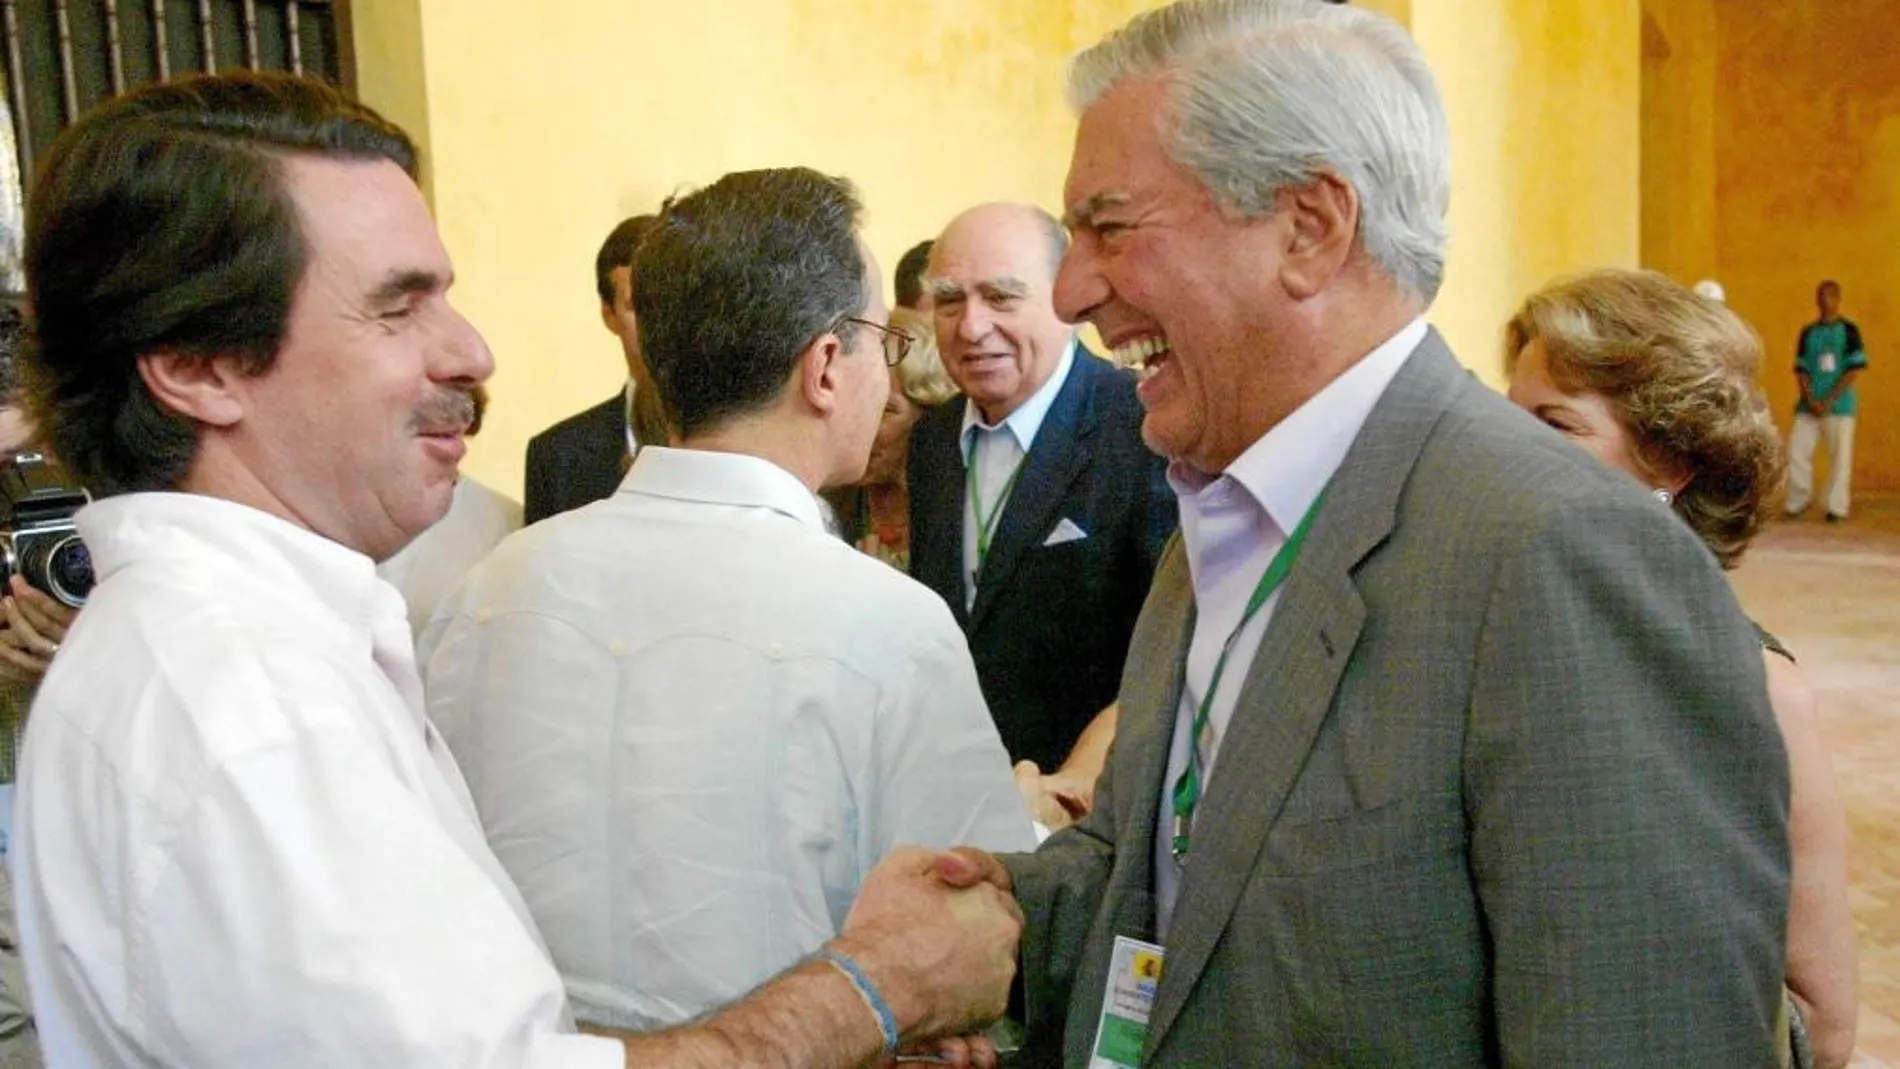 José María Aznar con Mario Vargas Llosa, en uno de los eventos culturales en los que coincidieron